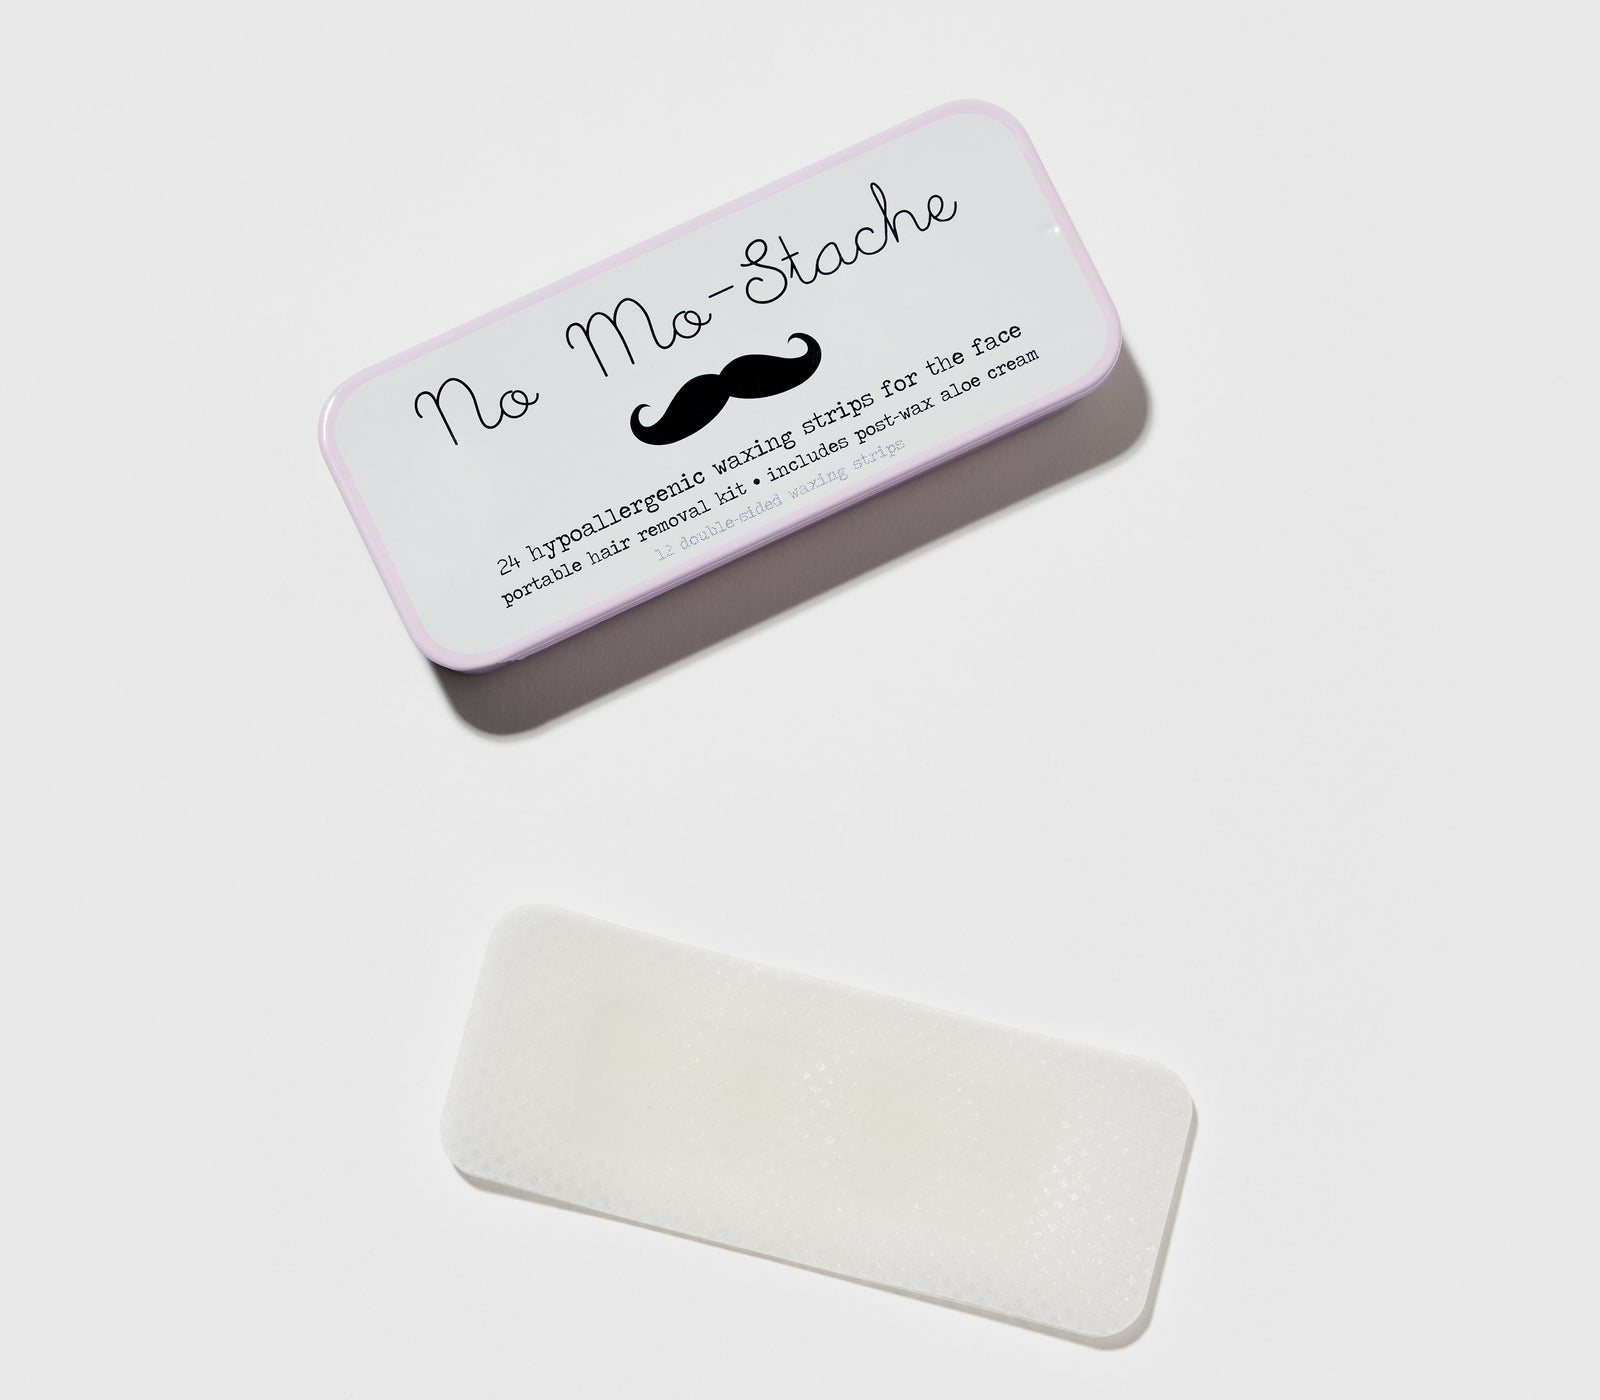 no mo stache portable lip wax strip kit reviews